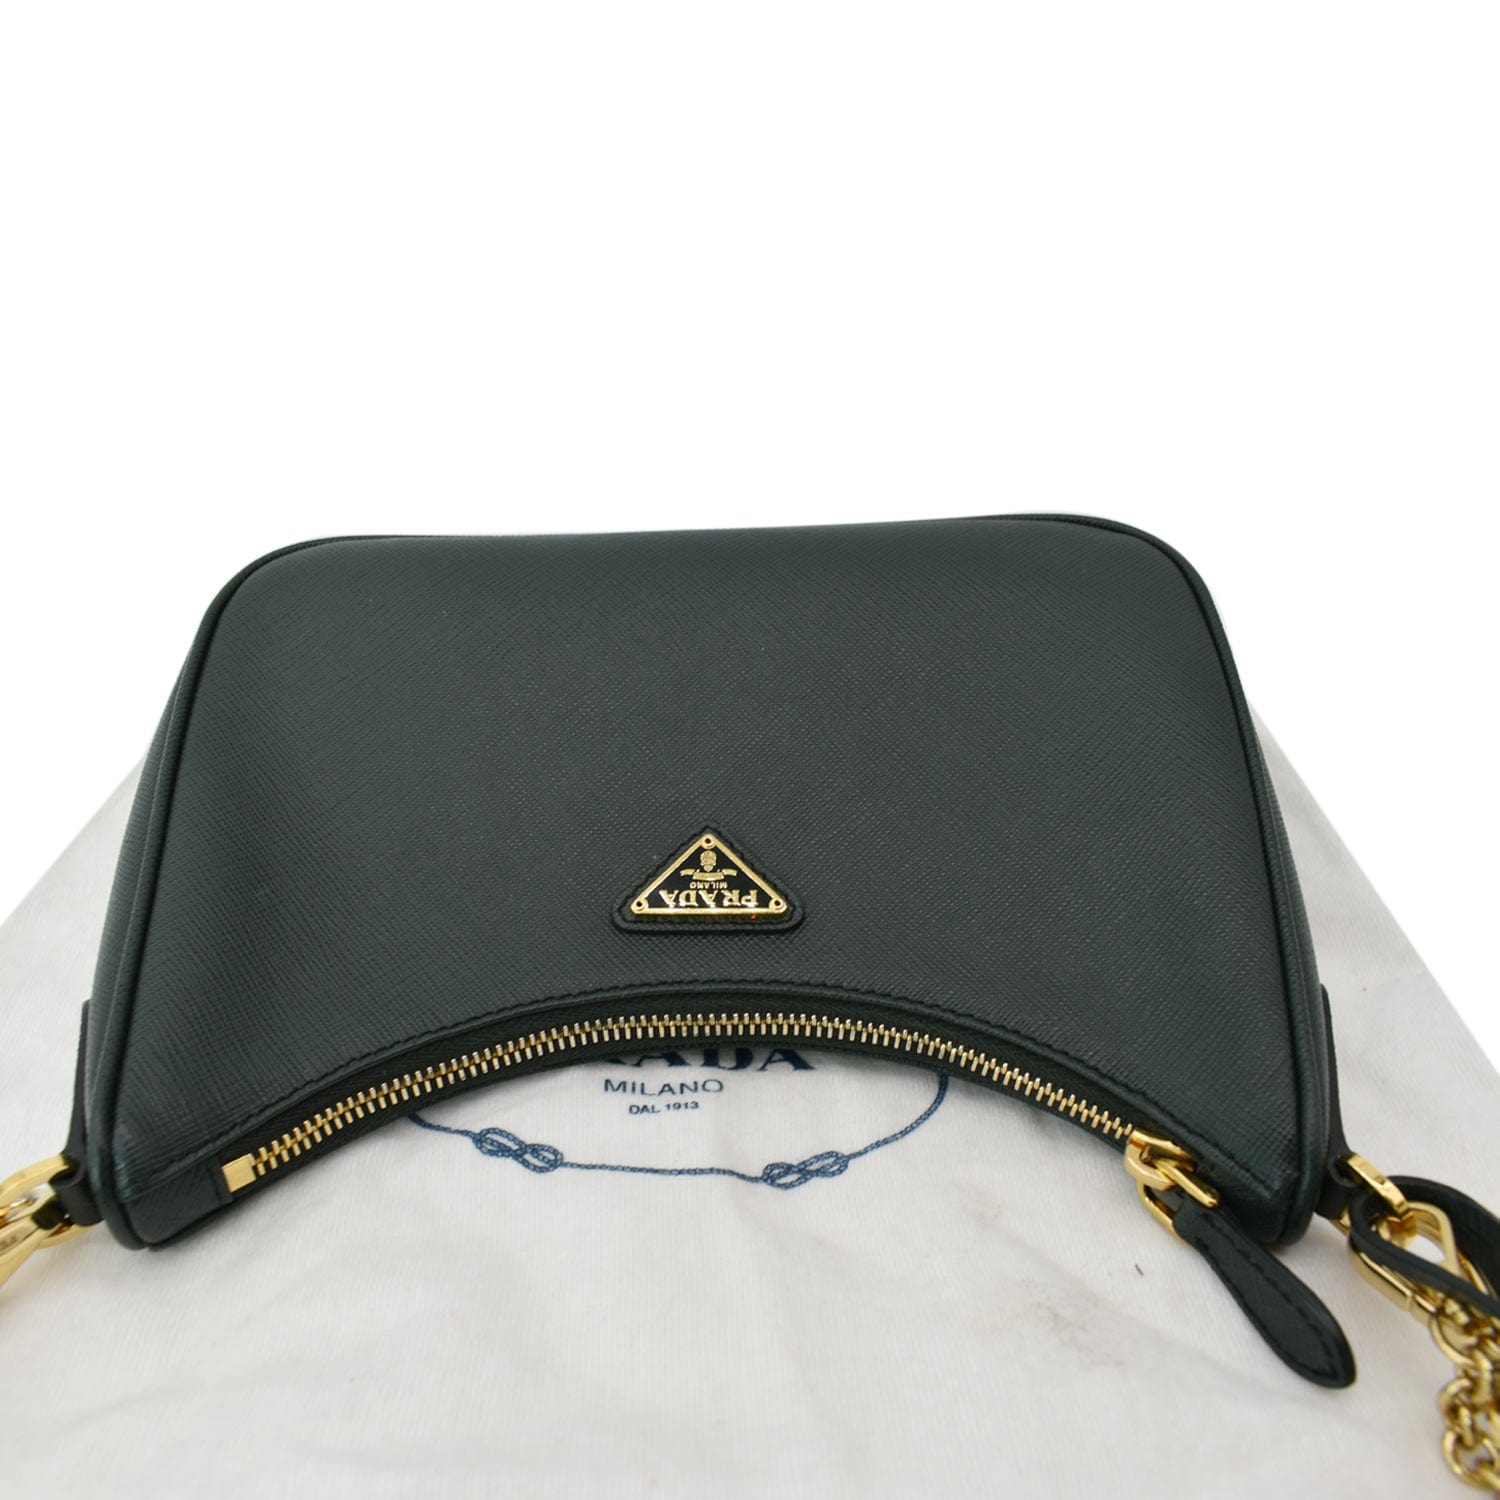 Prada Re-Edition 2005 Shoulder Bag Saffiano Black in Saffiano